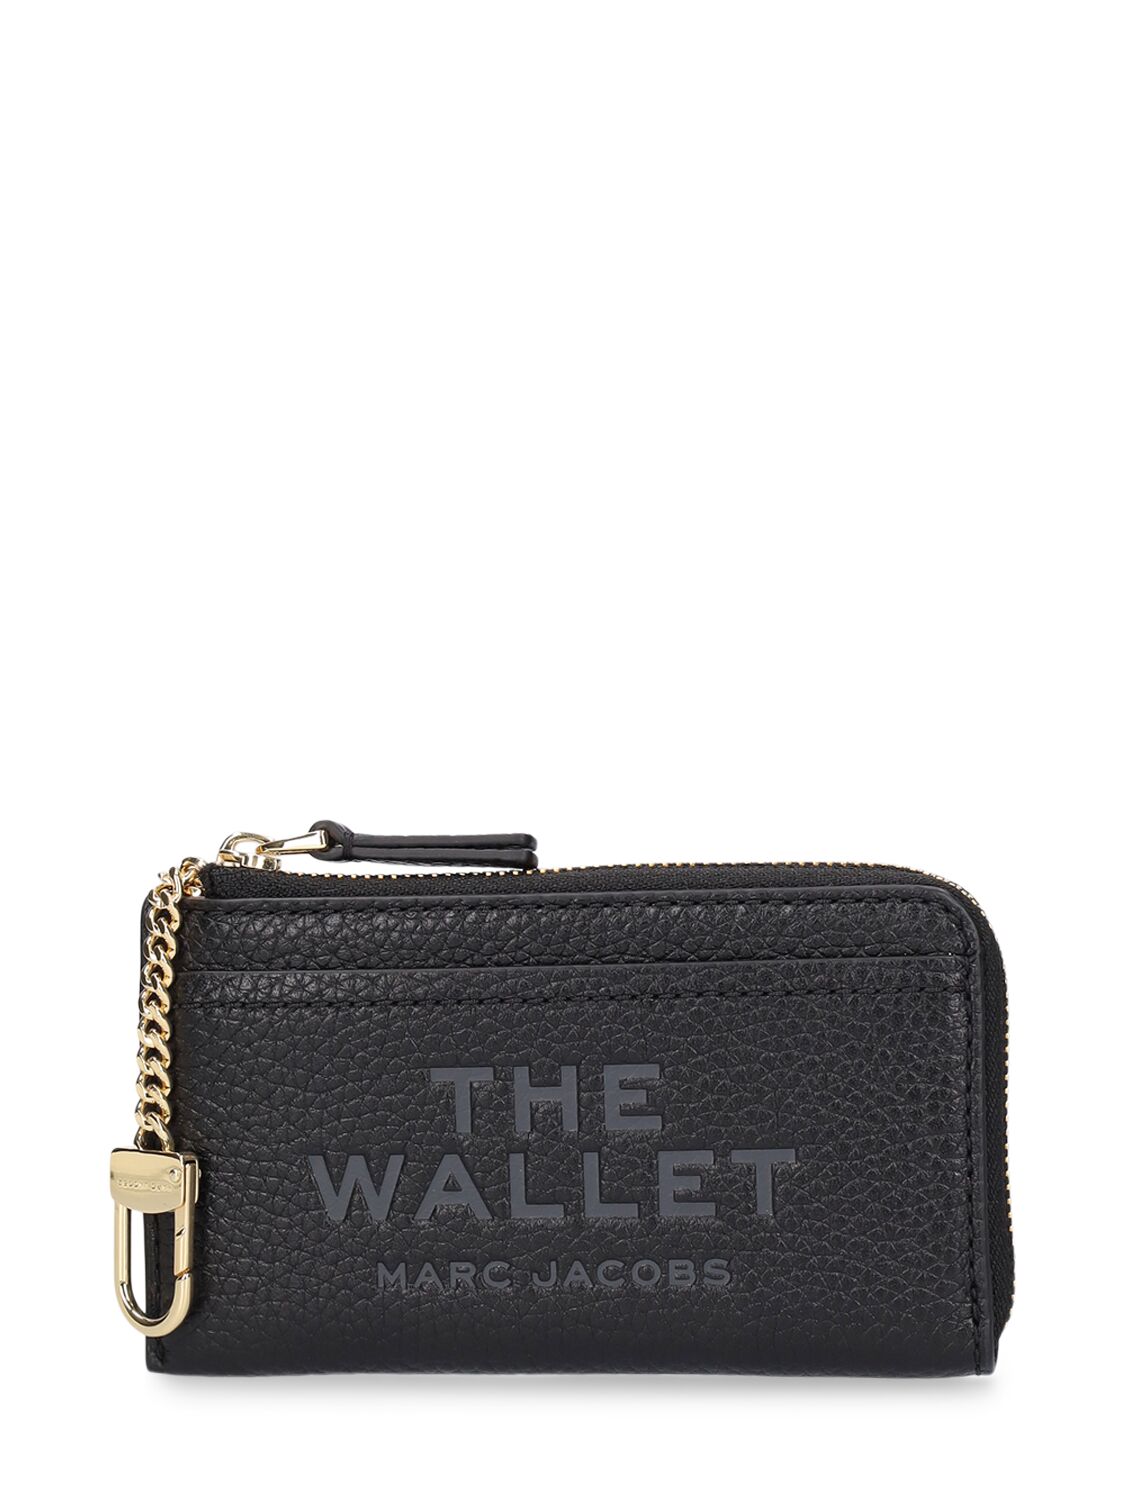 The Top Zip Multi Wallet